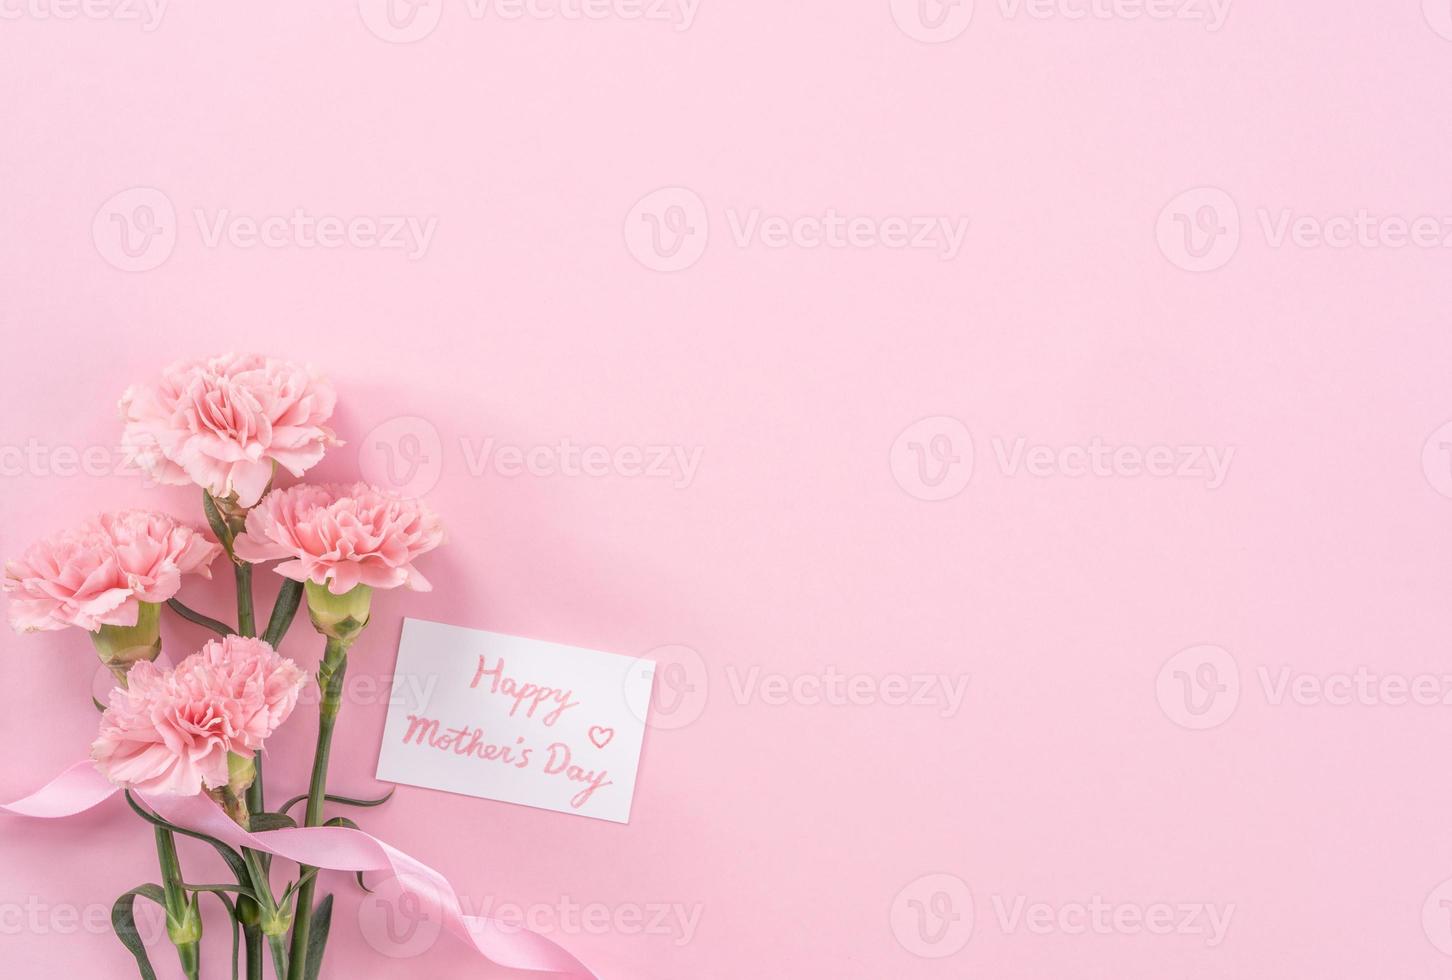 hermosos claveles tiernos de color rosa bebé frescos y florecientes aislados en un fondo rosa brillante, concepto de diseño de gracias del día de la madre, vista superior, capa plana, espacio de copia, primer plano, maqueta foto